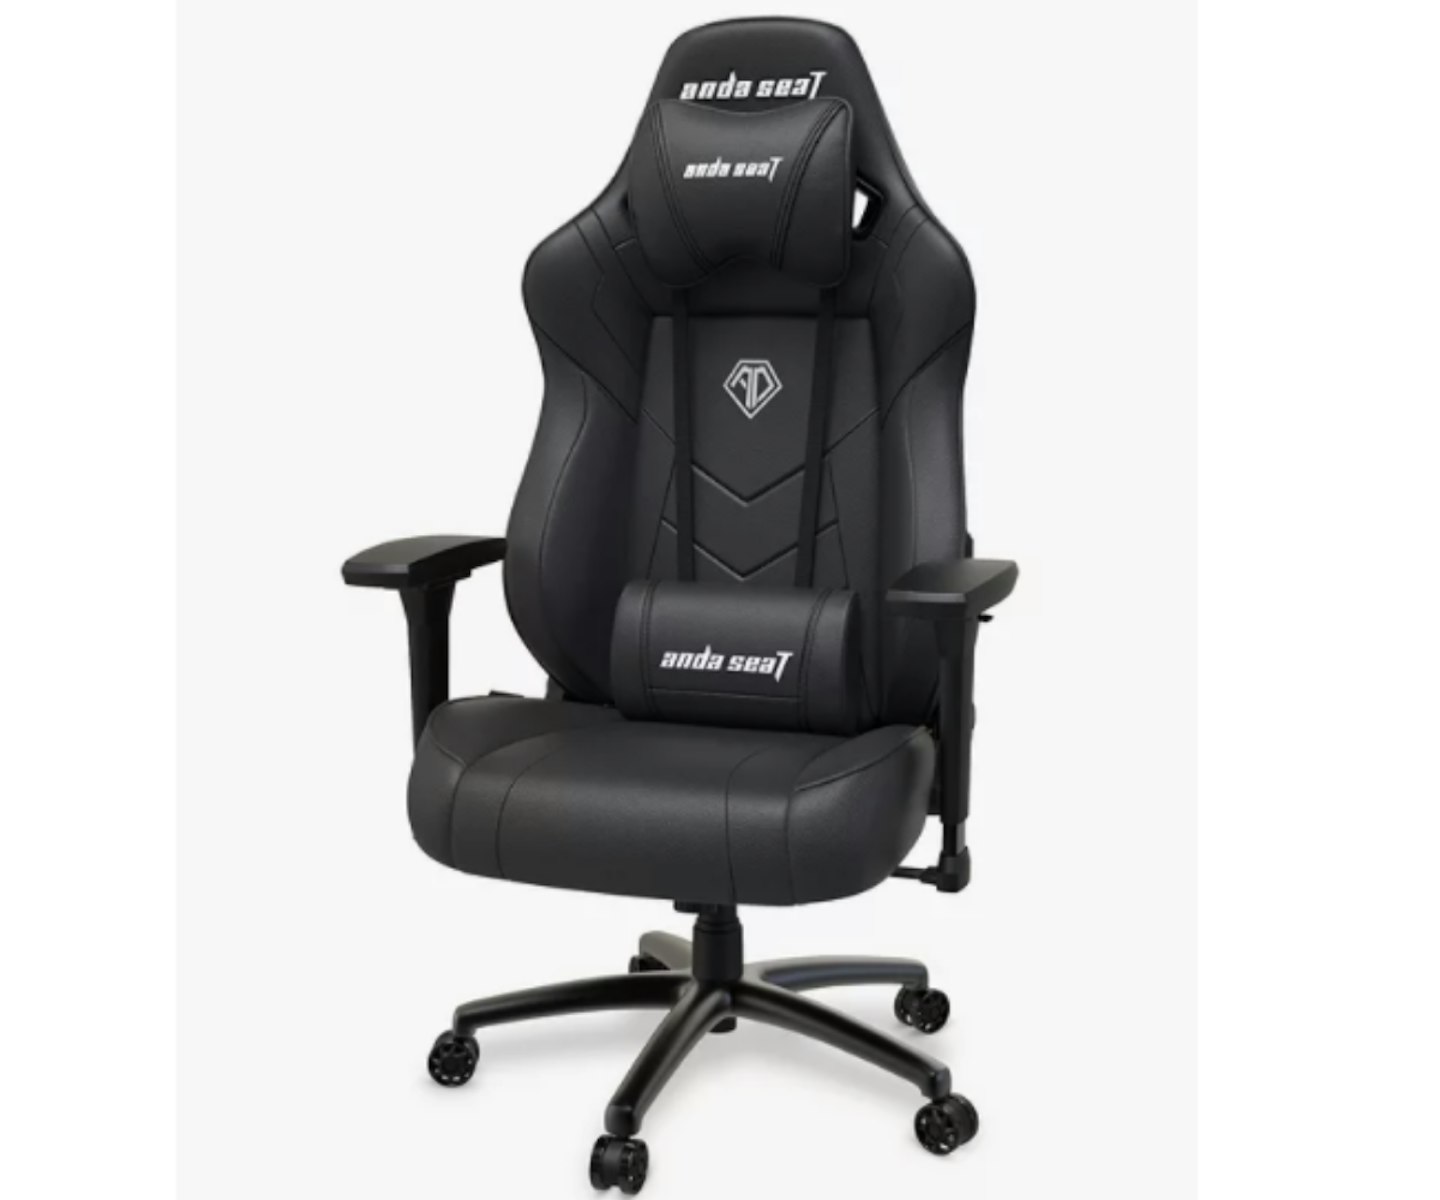 anda seaT Dark Demon Premium Gaming Chair, Black